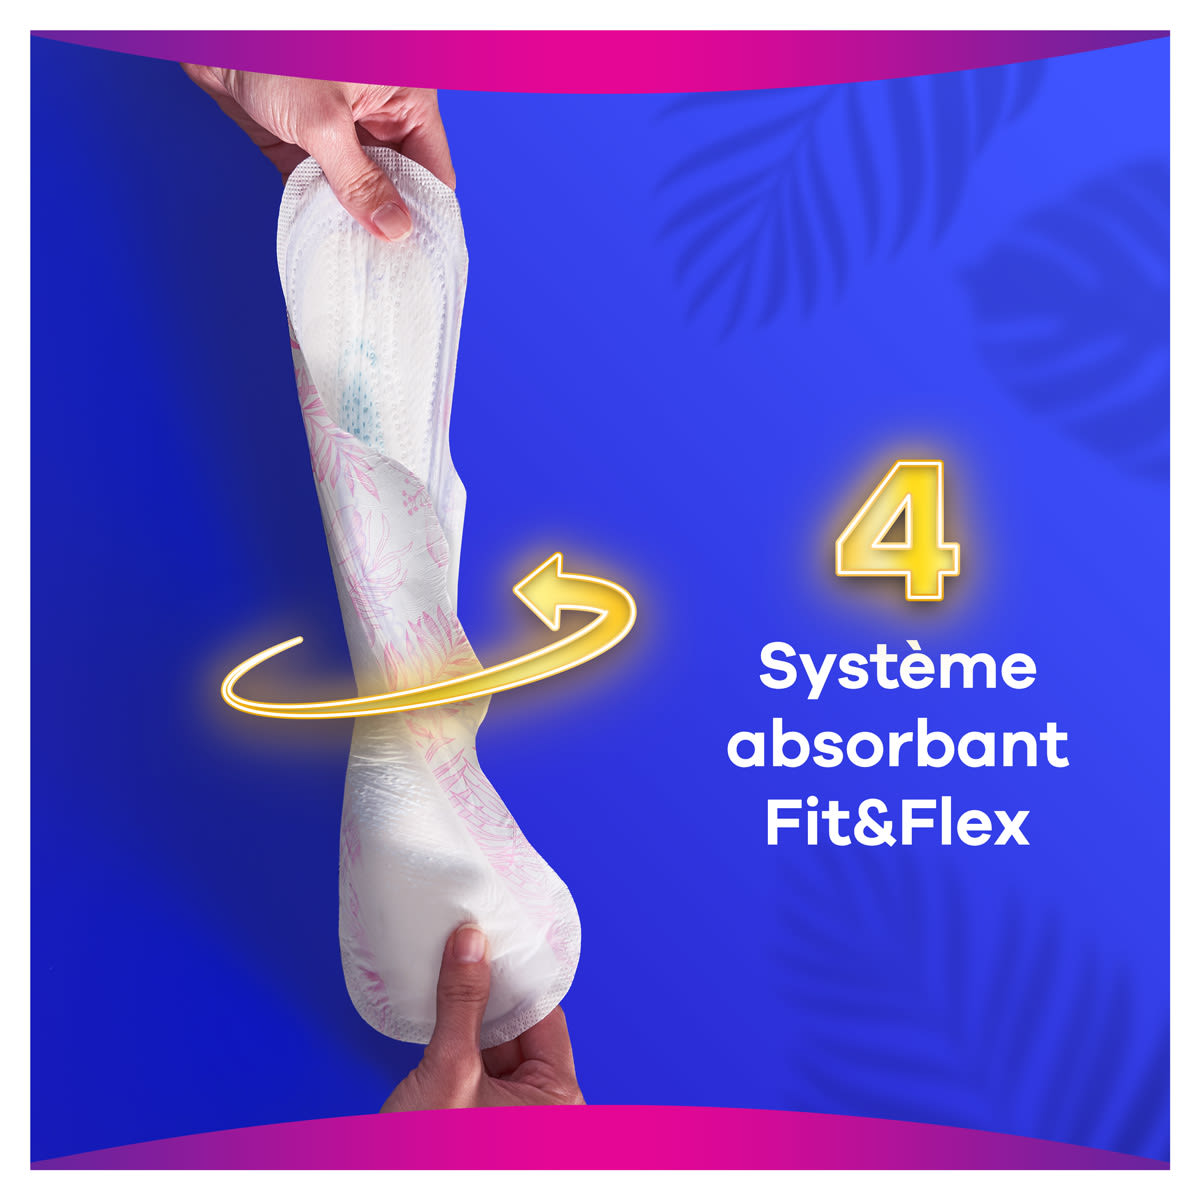 Le système Fit&Flex est ultra-absorbant et très flexible pour s’adapter à votre corps